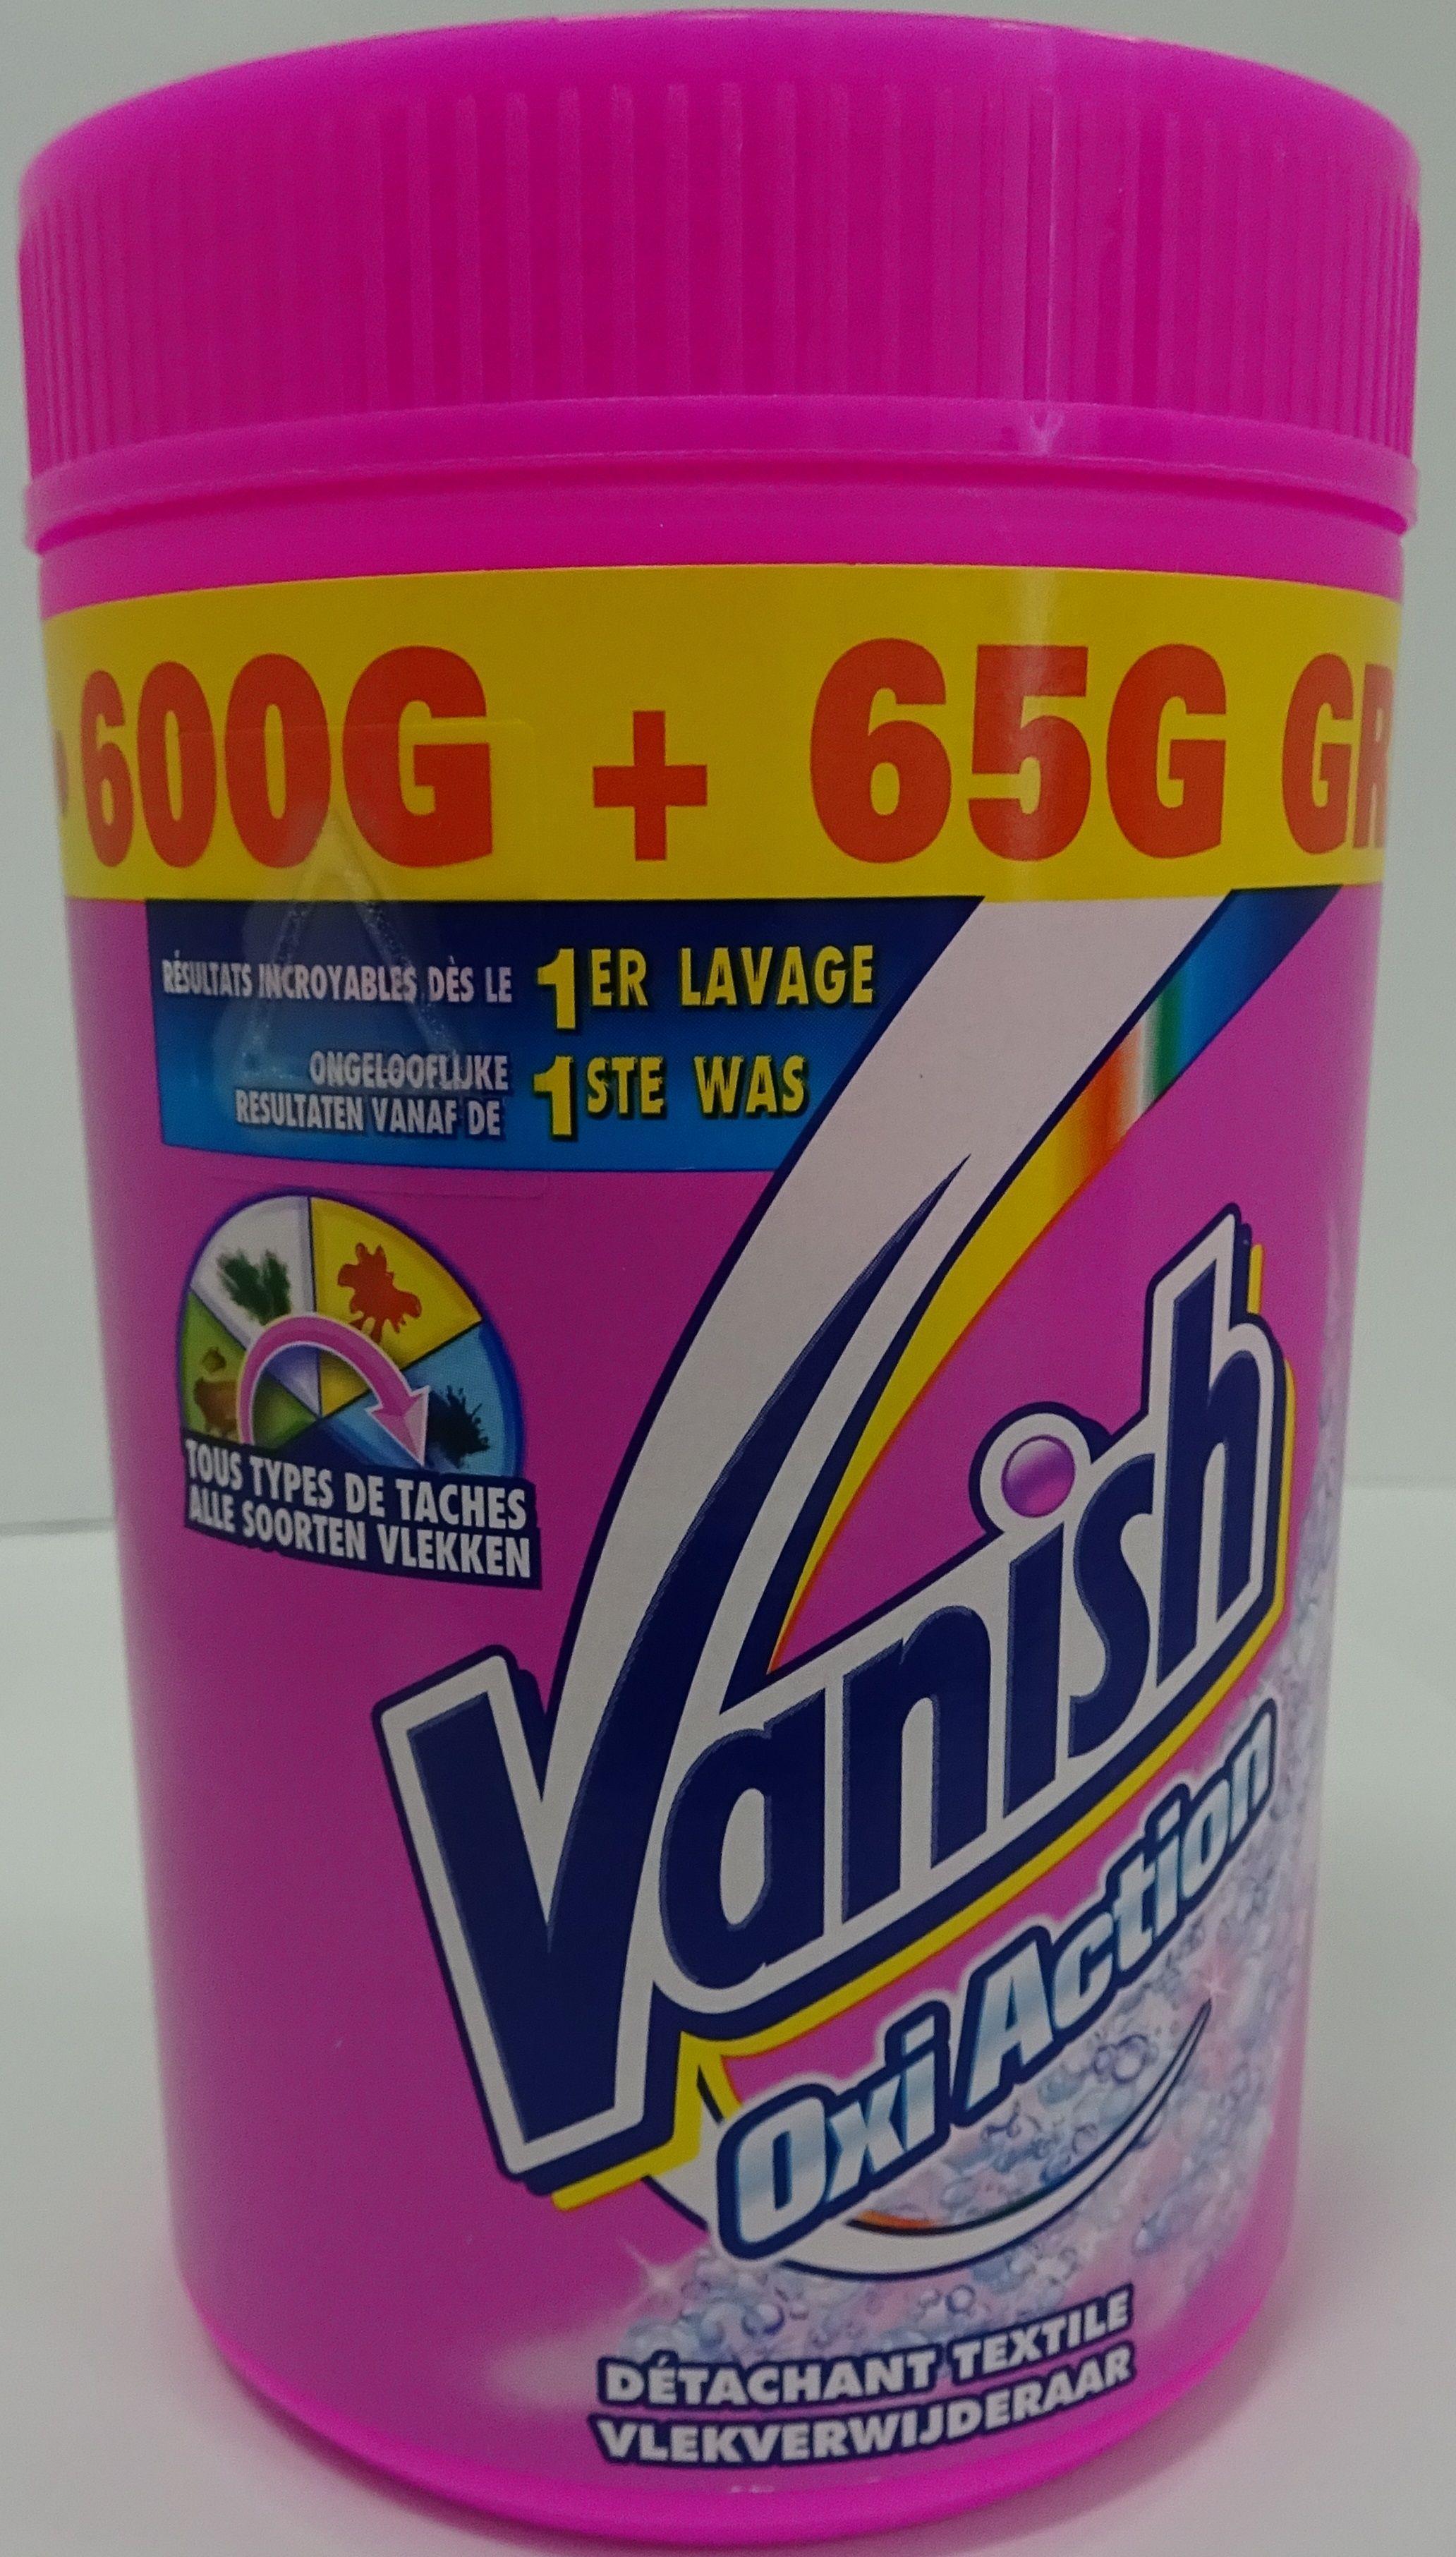 Vanish Oxi Action Vlekverwijderaar - 600gr + 65gr gratis